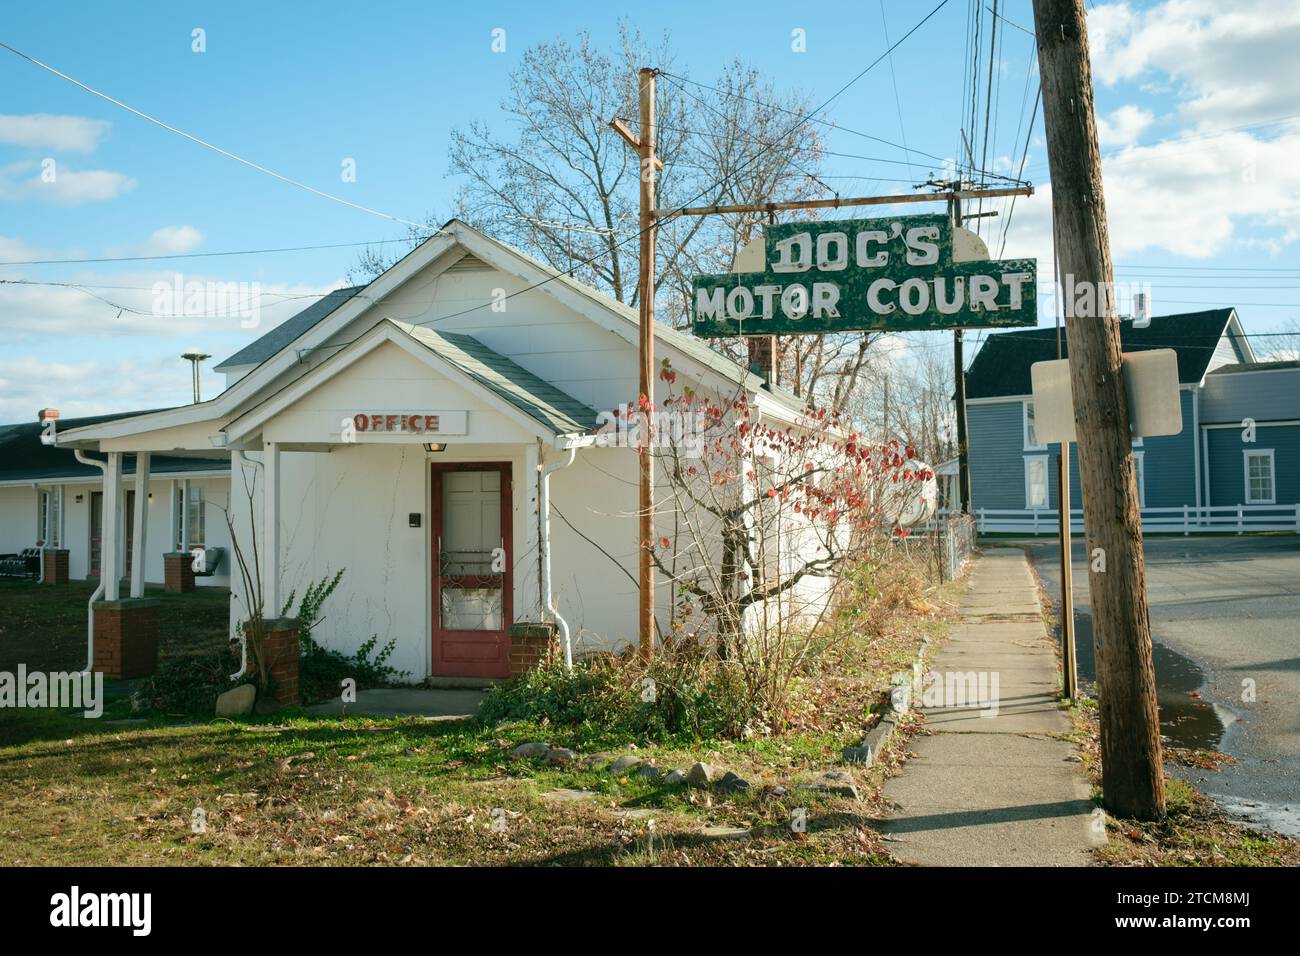 Docs Motor court signe de motel vintage à Colonial Beach, Virginie Banque D'Images